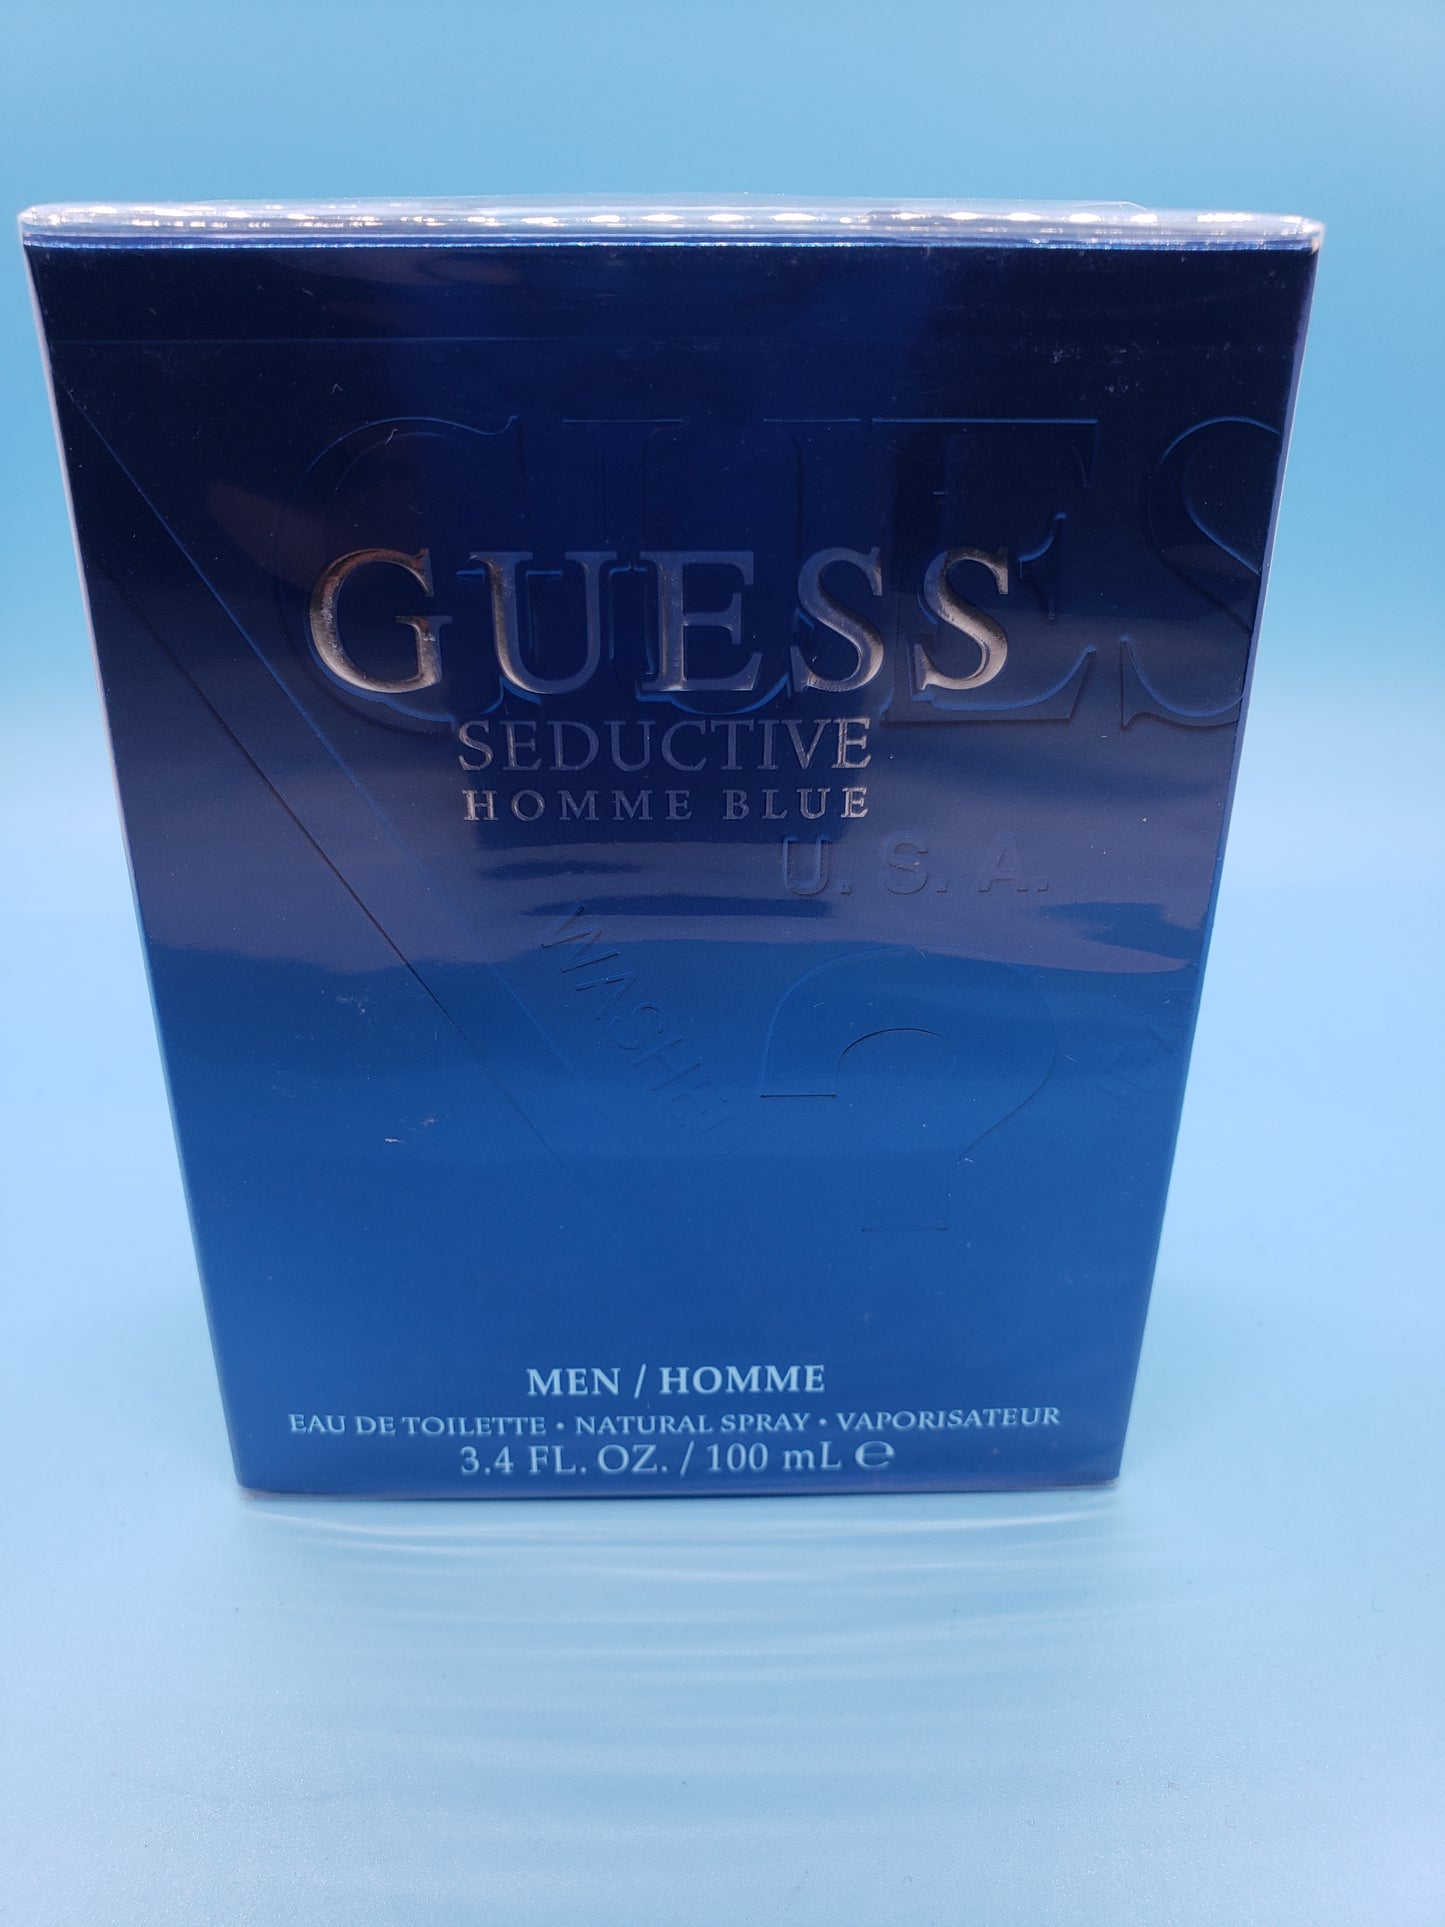 Guess - Seductive Homme Blue 3.4fl oz